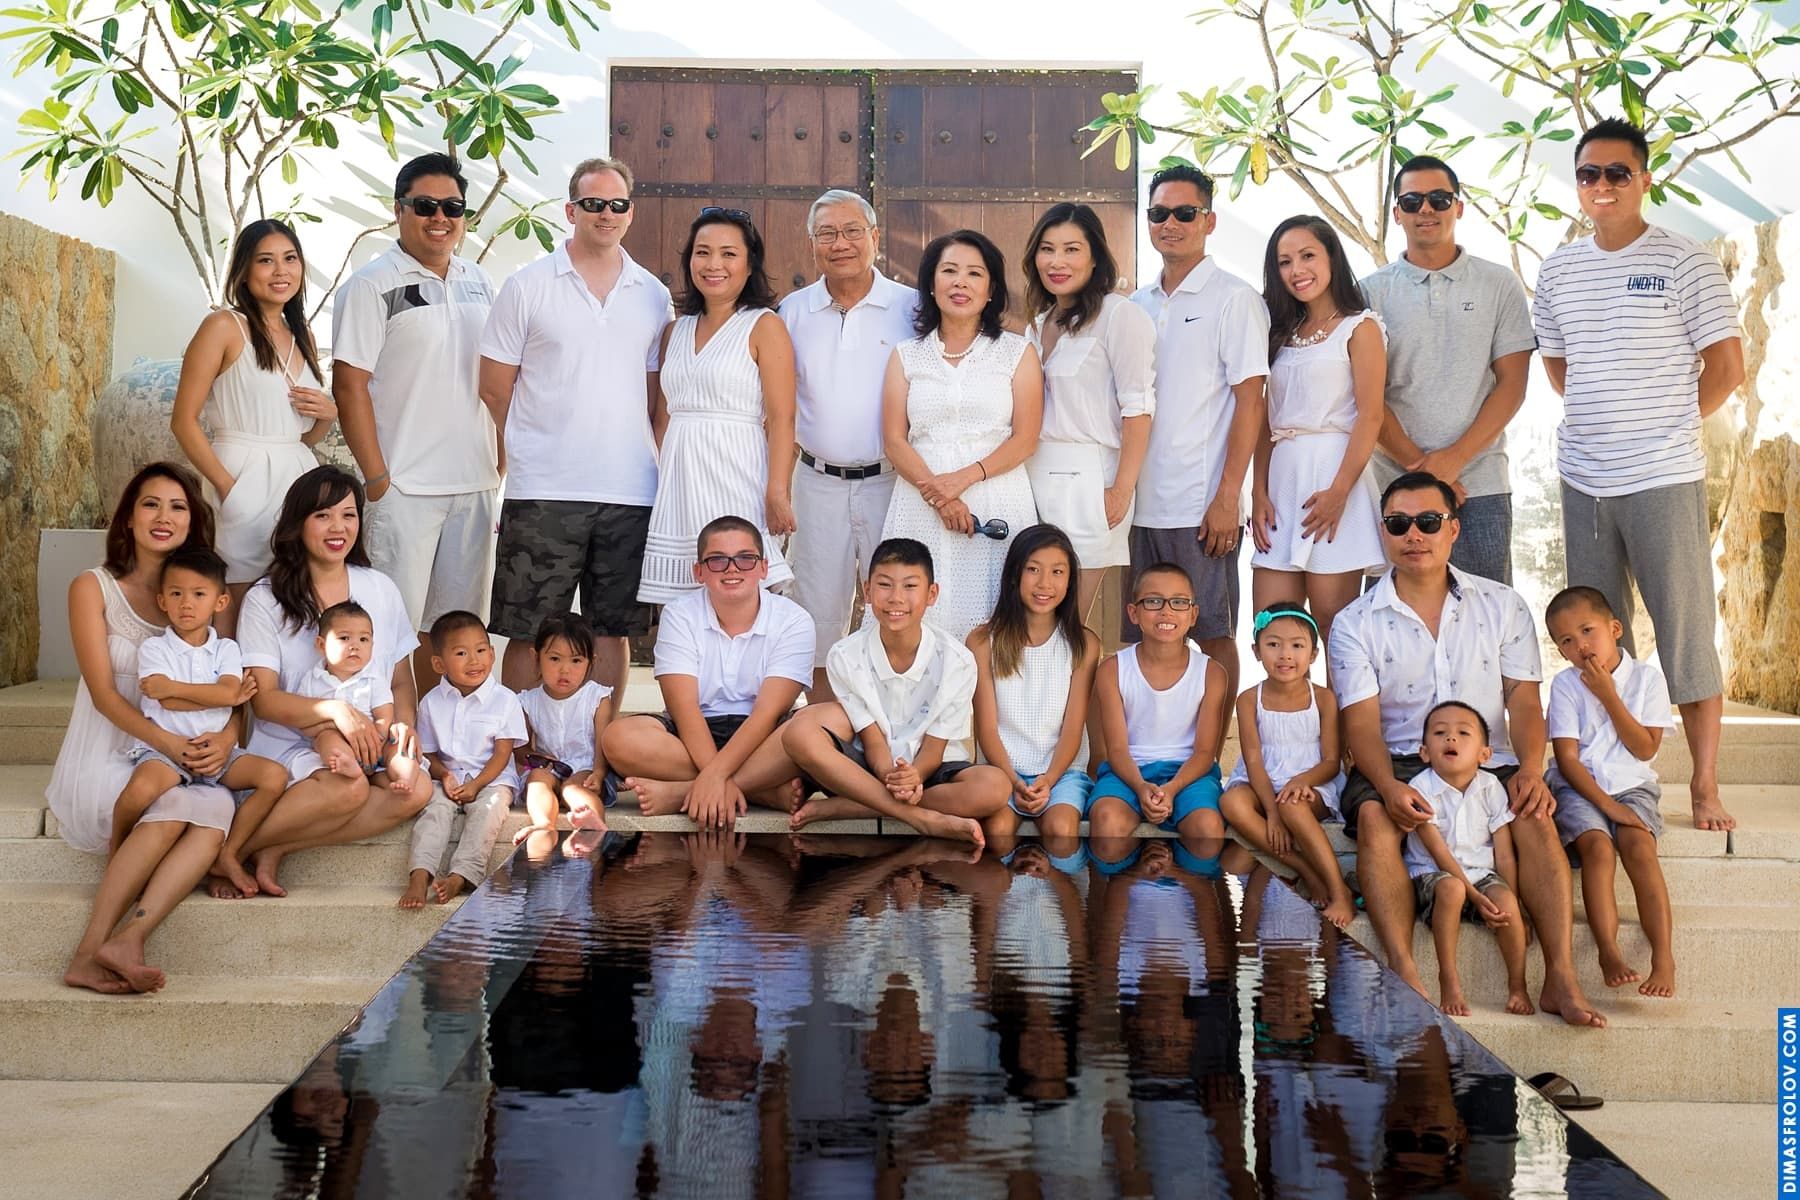 ถ่ายภาพกับครอบครัวใหญ่ ณ เกาะสมุย. ช่างภาพ ดีมัส โฟรล็อกซ์. บาทต่อภาพ1050